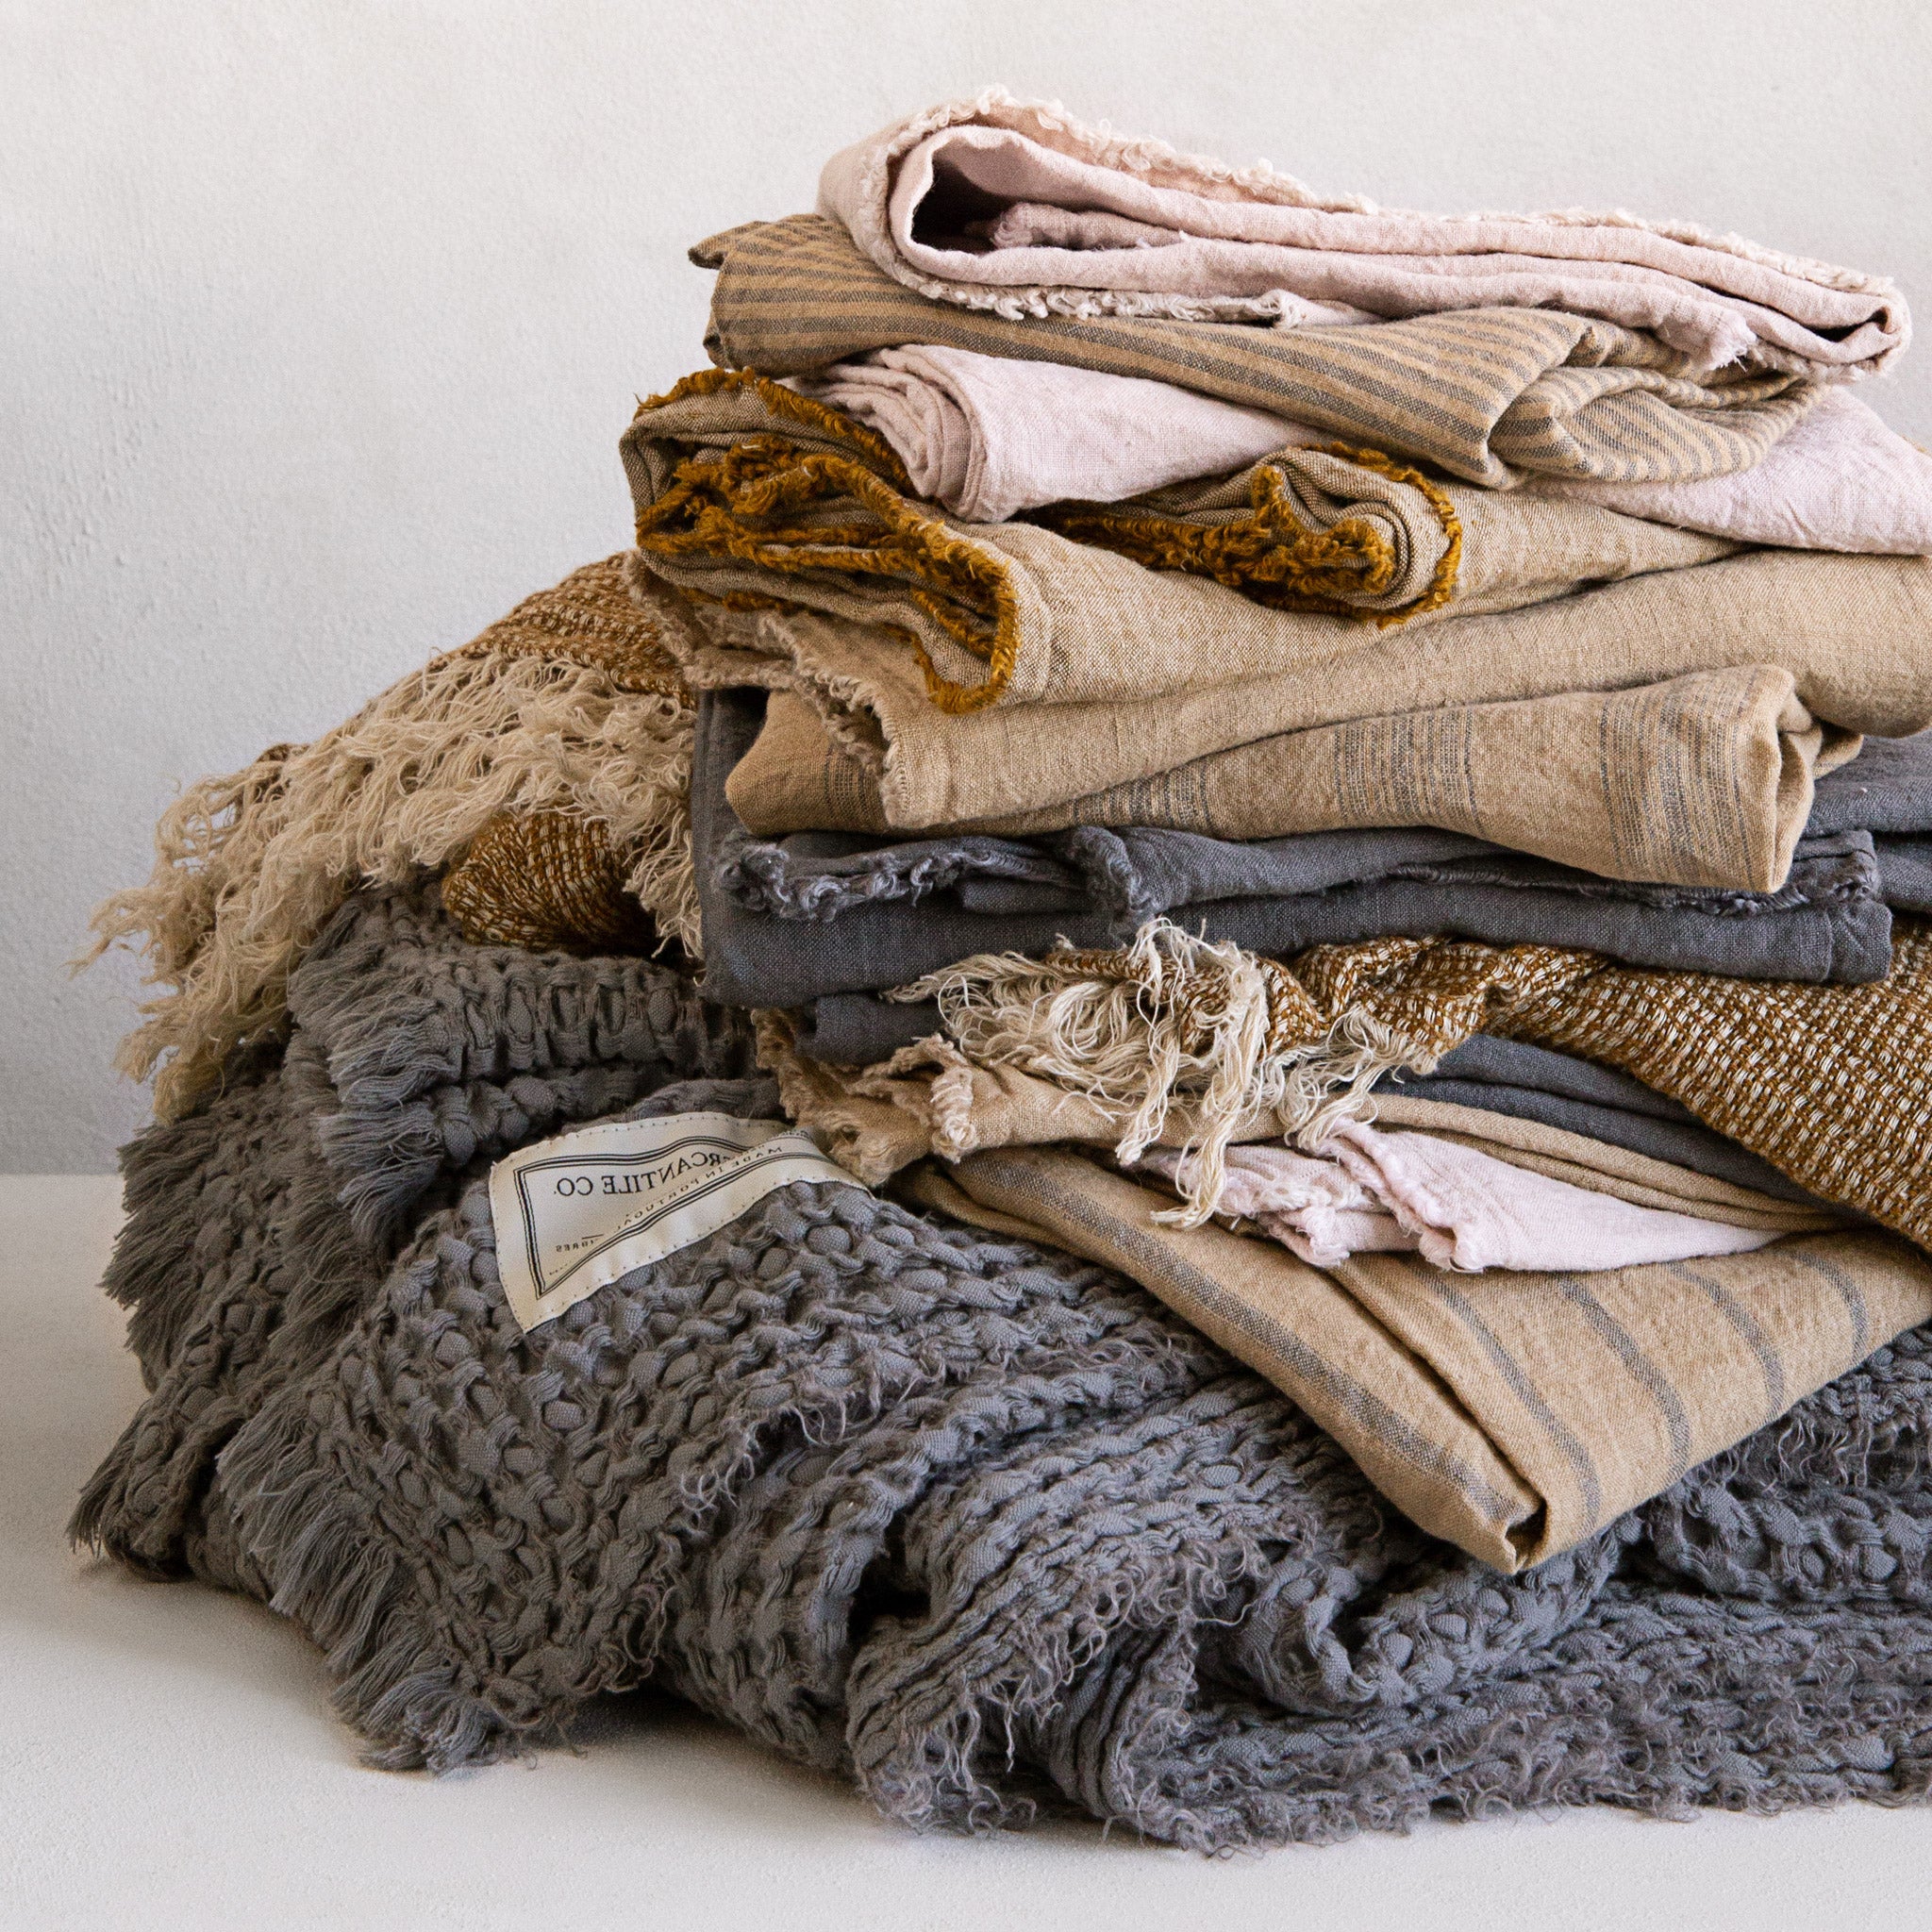 Linen Blanket | Charcoal Grey Luxury Throw | Hale Mercantile Co.